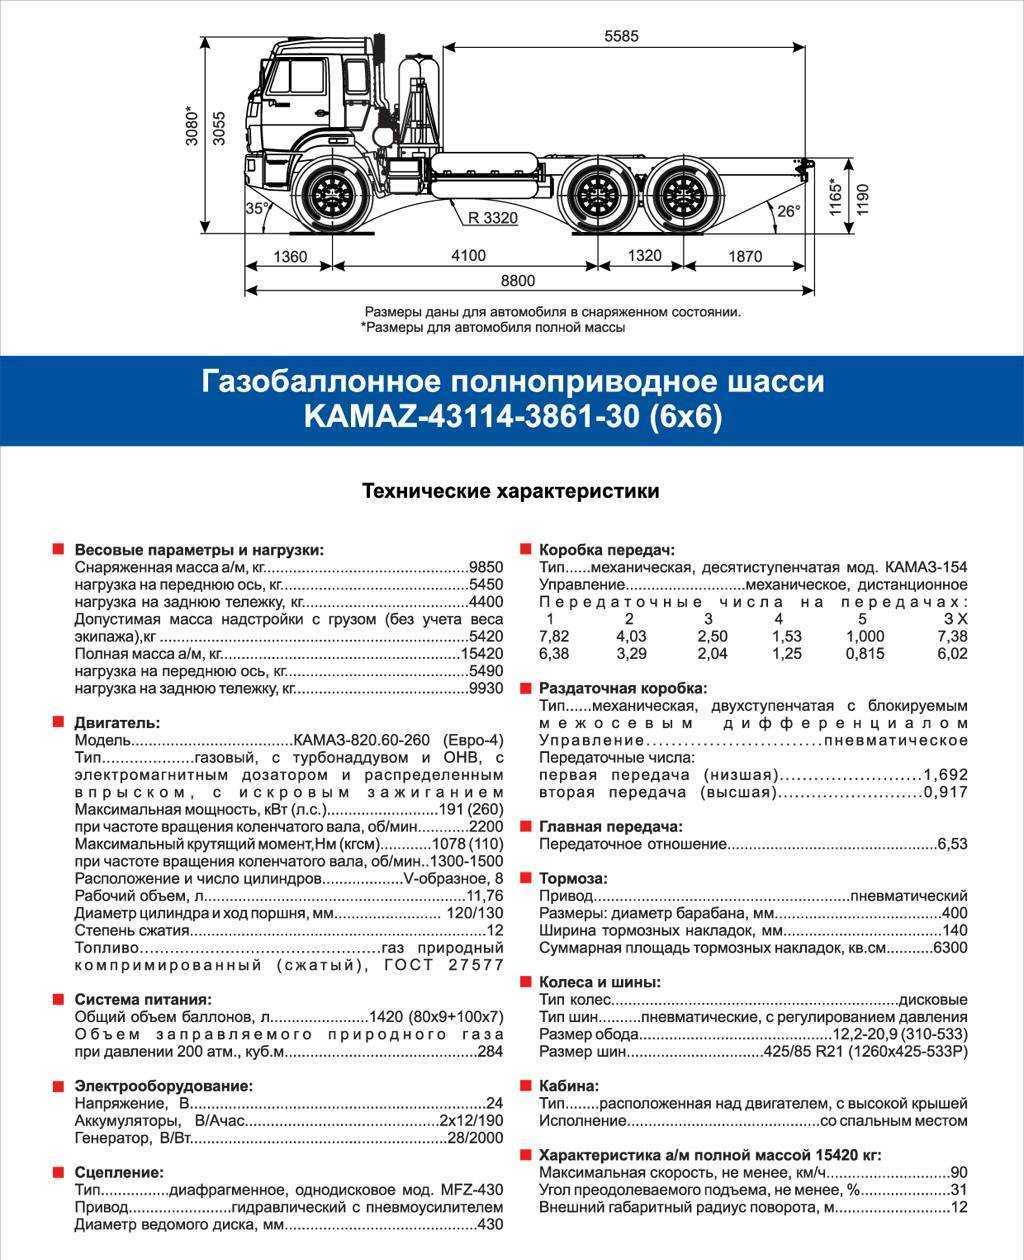 Камаз 65201 технические характеристики: двигатель, трансмиссия и шасси